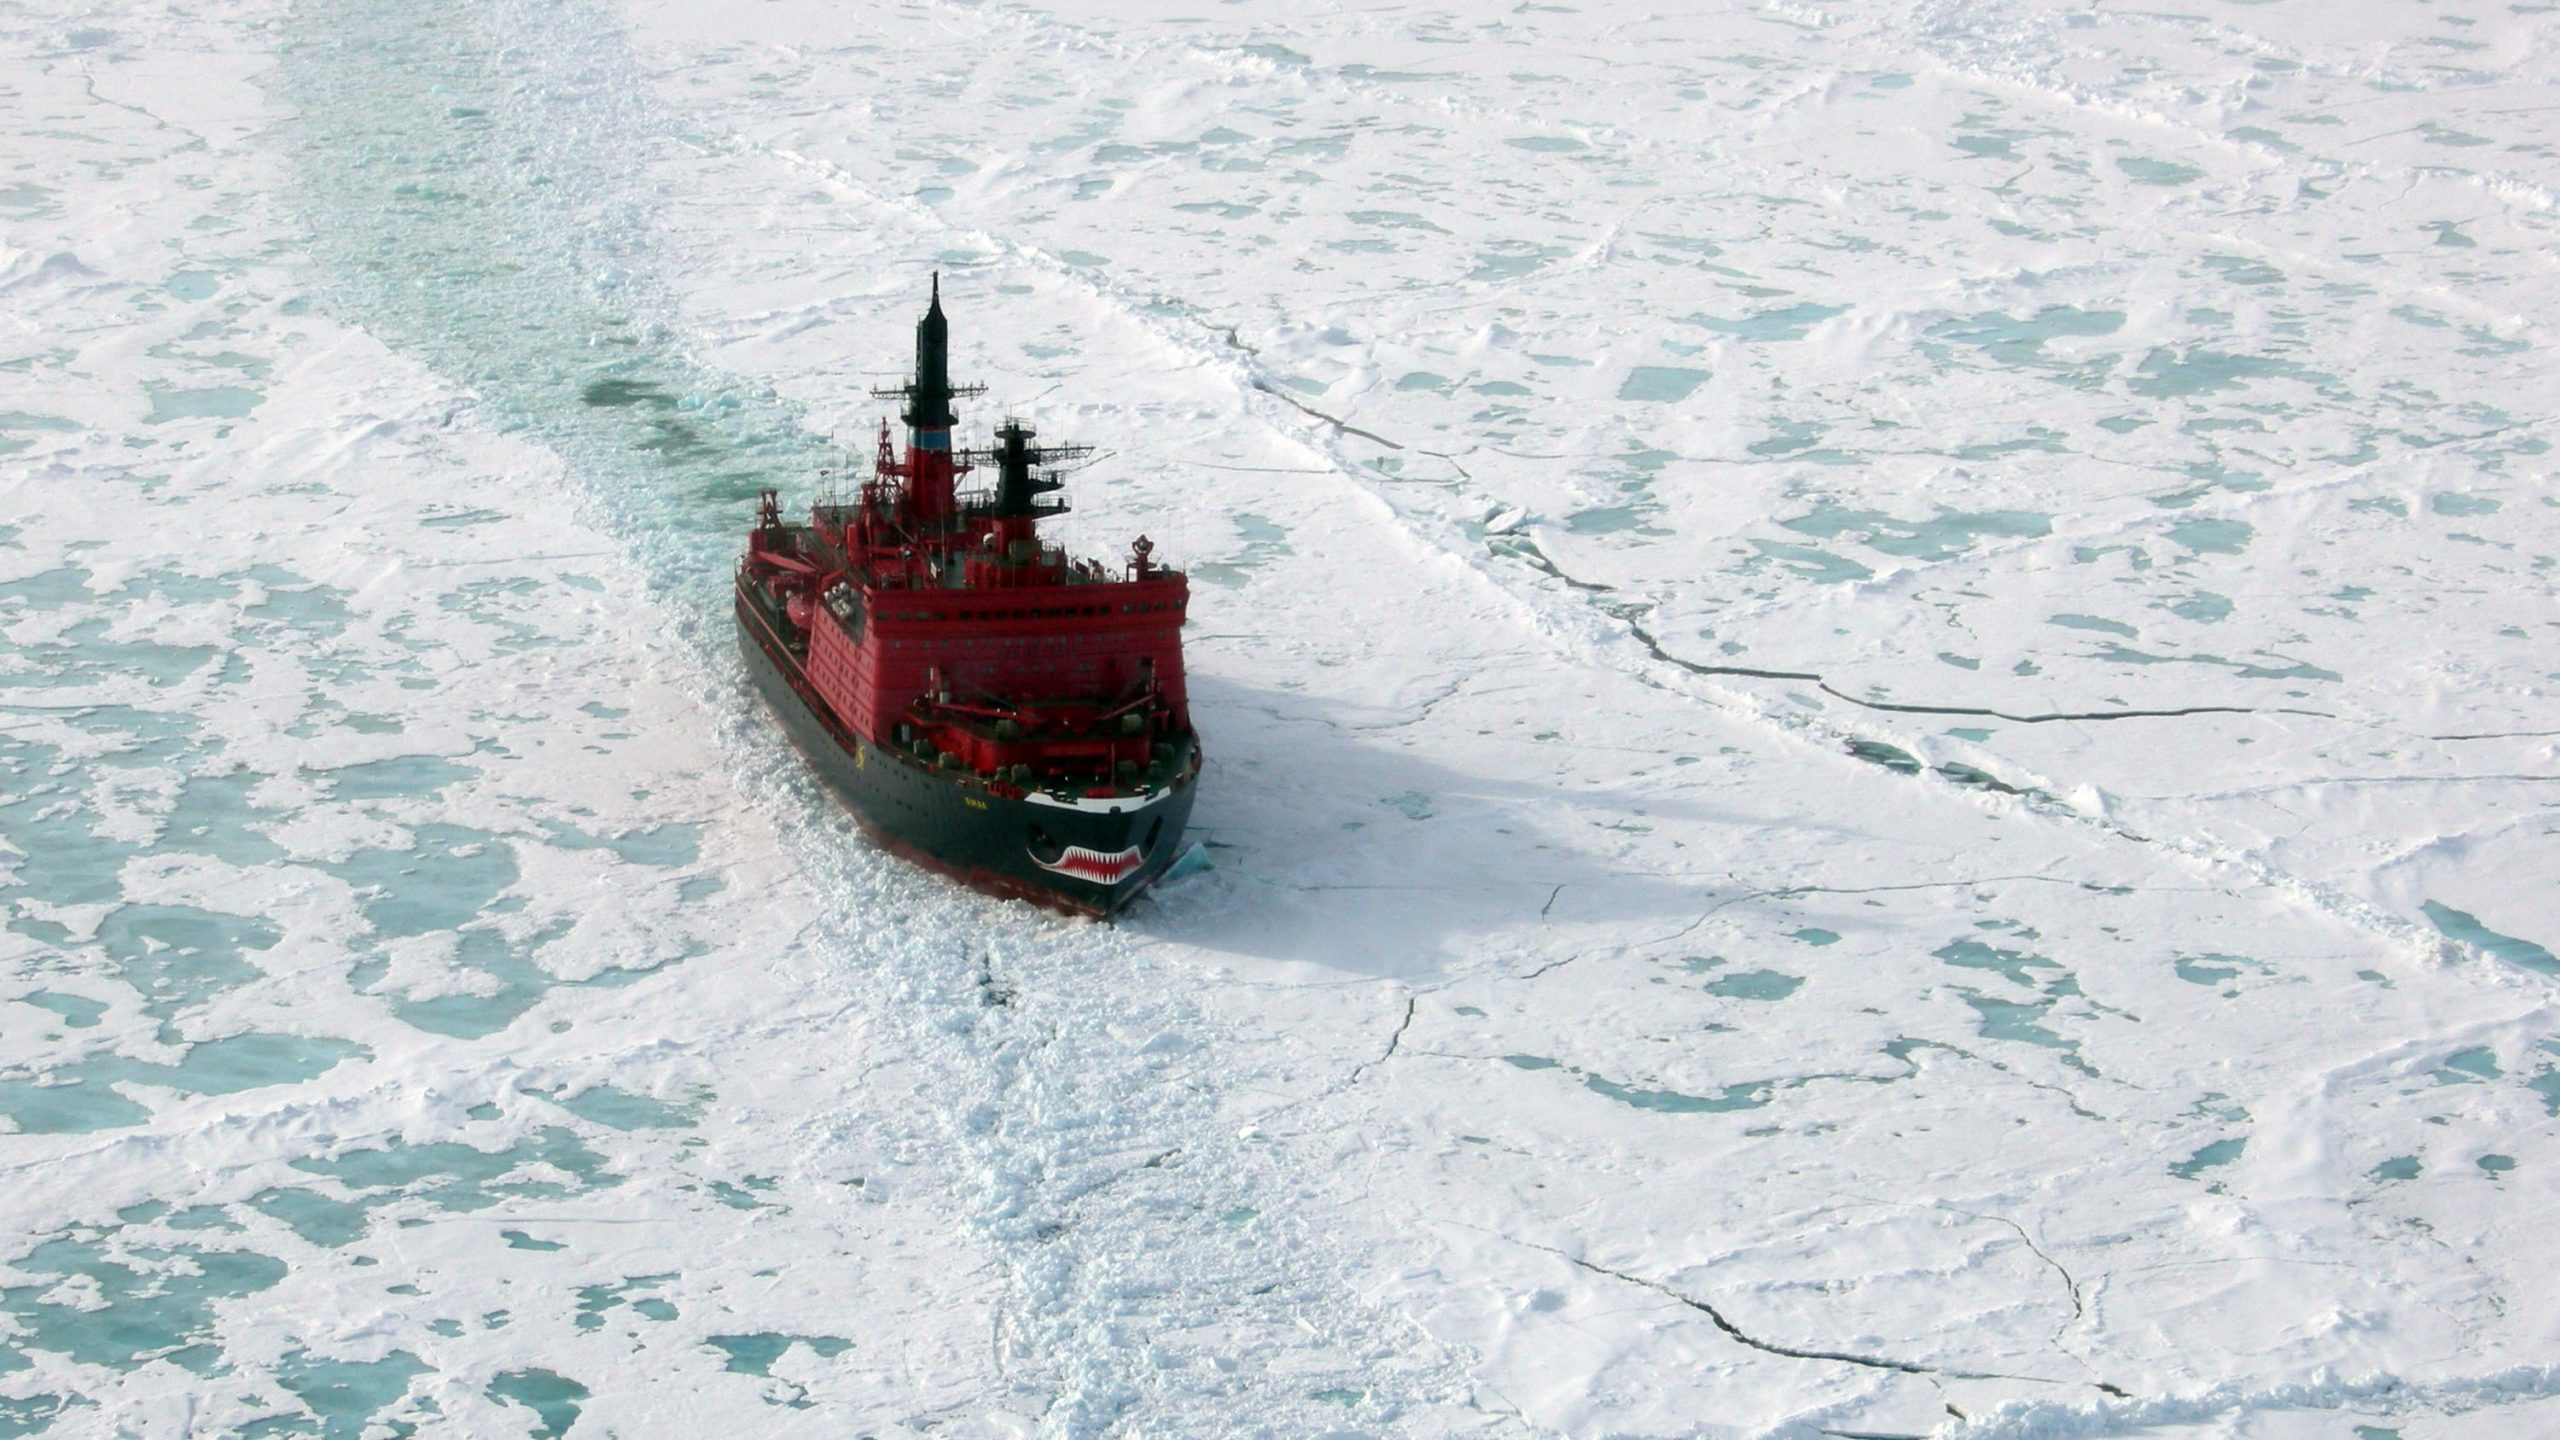 كاسحات الجليد - كاسحة جليد في القطب الشمالي